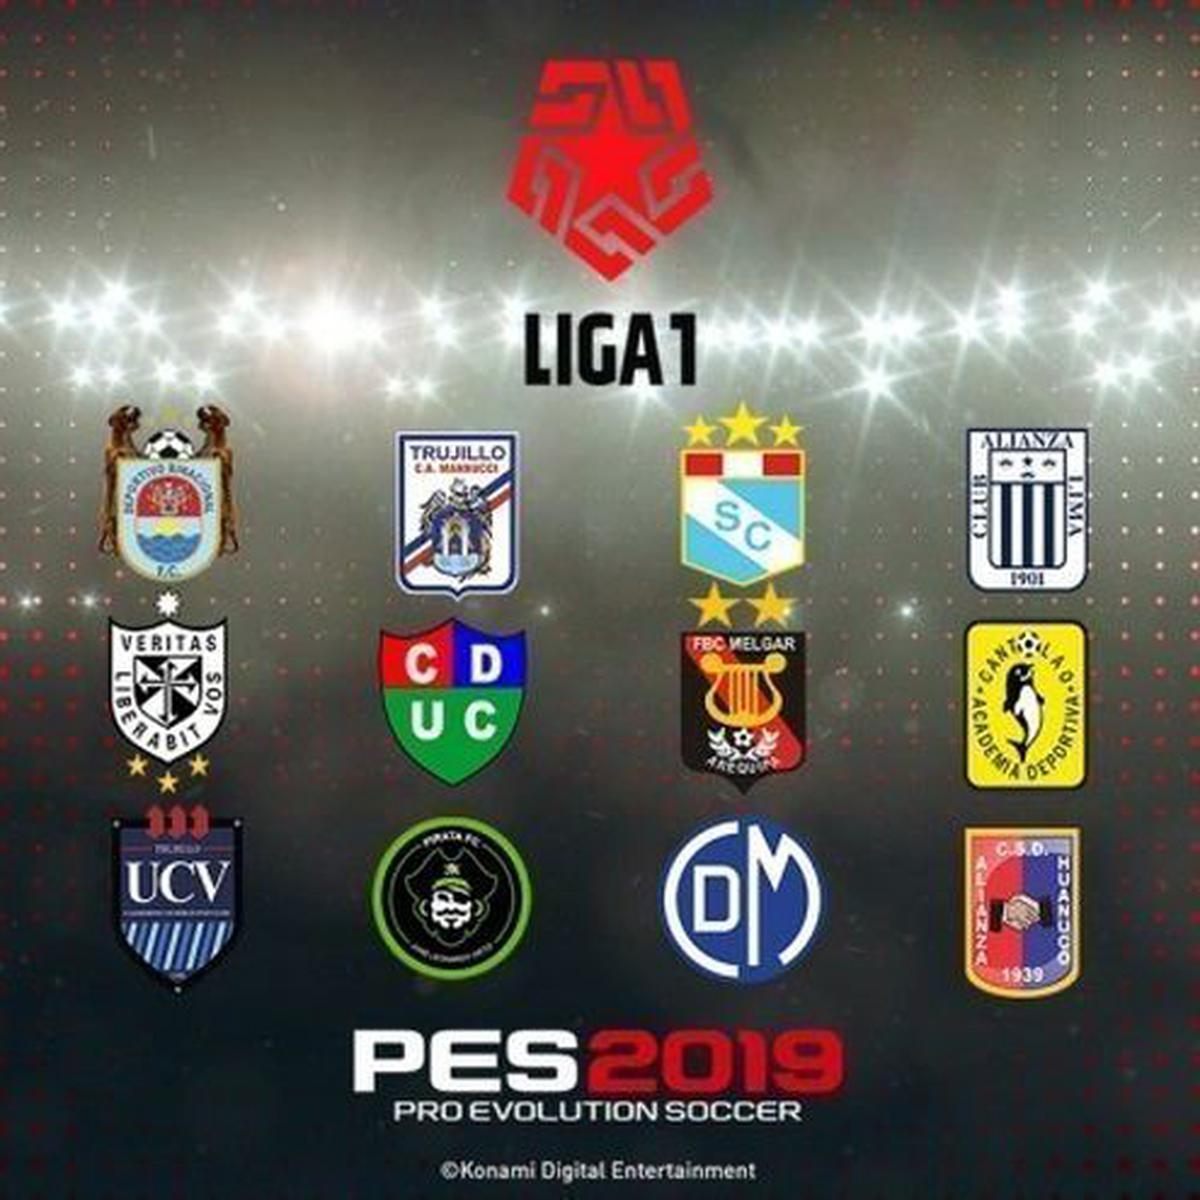 PES 2019 Pro Evolution Soccer Liga 1 y Liga 2 del fútbol están disponibles en modo Option File | PS4 | | DEPOR